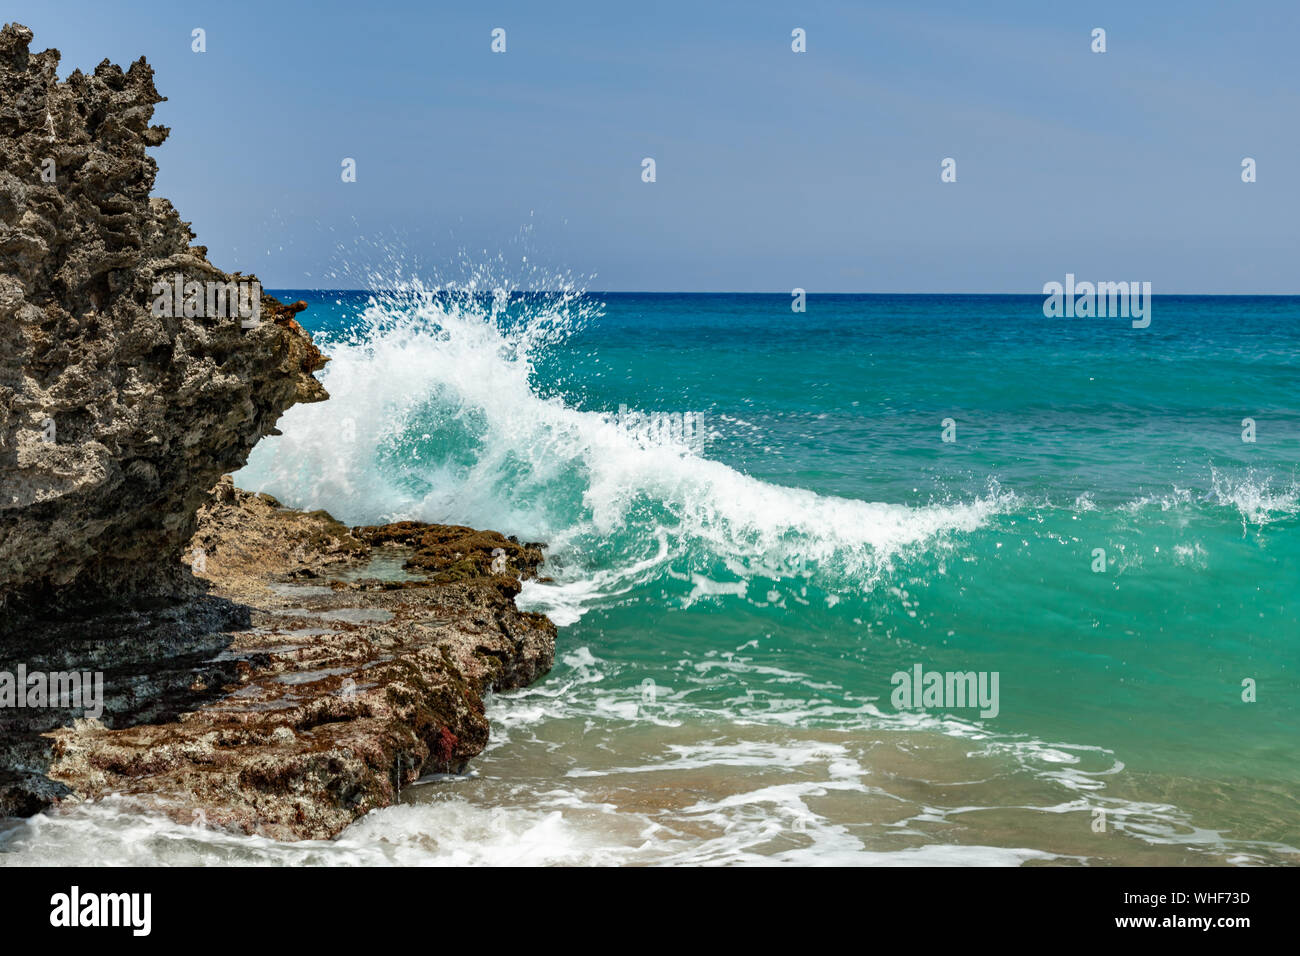 Les vagues écumeuses de l'océan, des éclaboussures sur la plage à proximité de rochers Banque D'Images